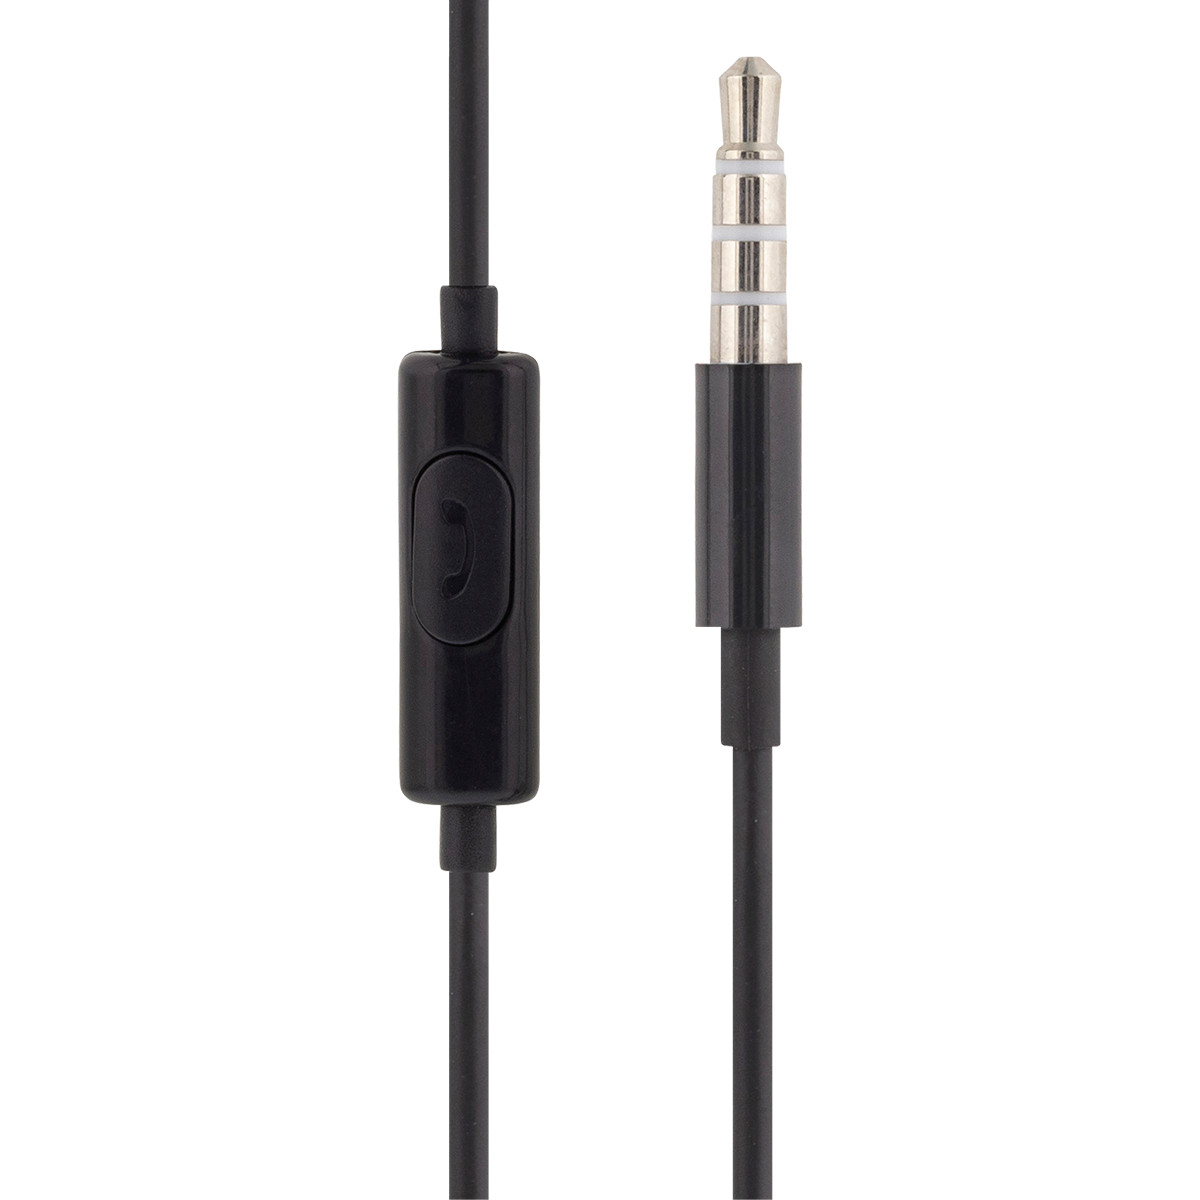 STREETZ Semi-In-Ear hörlurar med mikrofon, 3.5 mm, svart